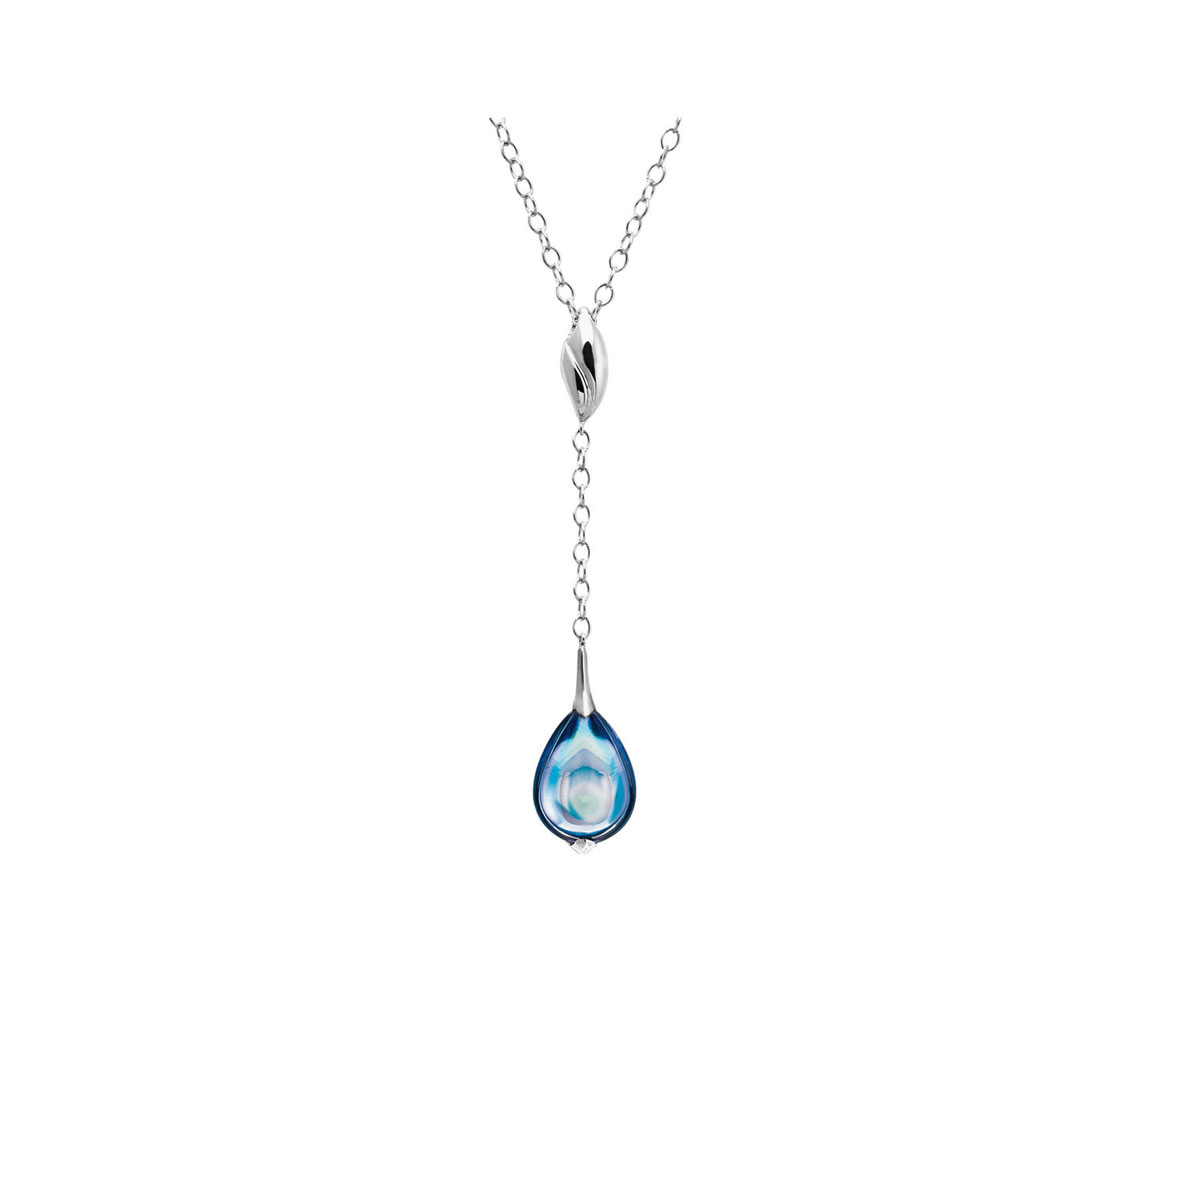 Baccarat Crystal Fleur De Psydelic Aqua Blue Mirror Silver Pendant Necklace